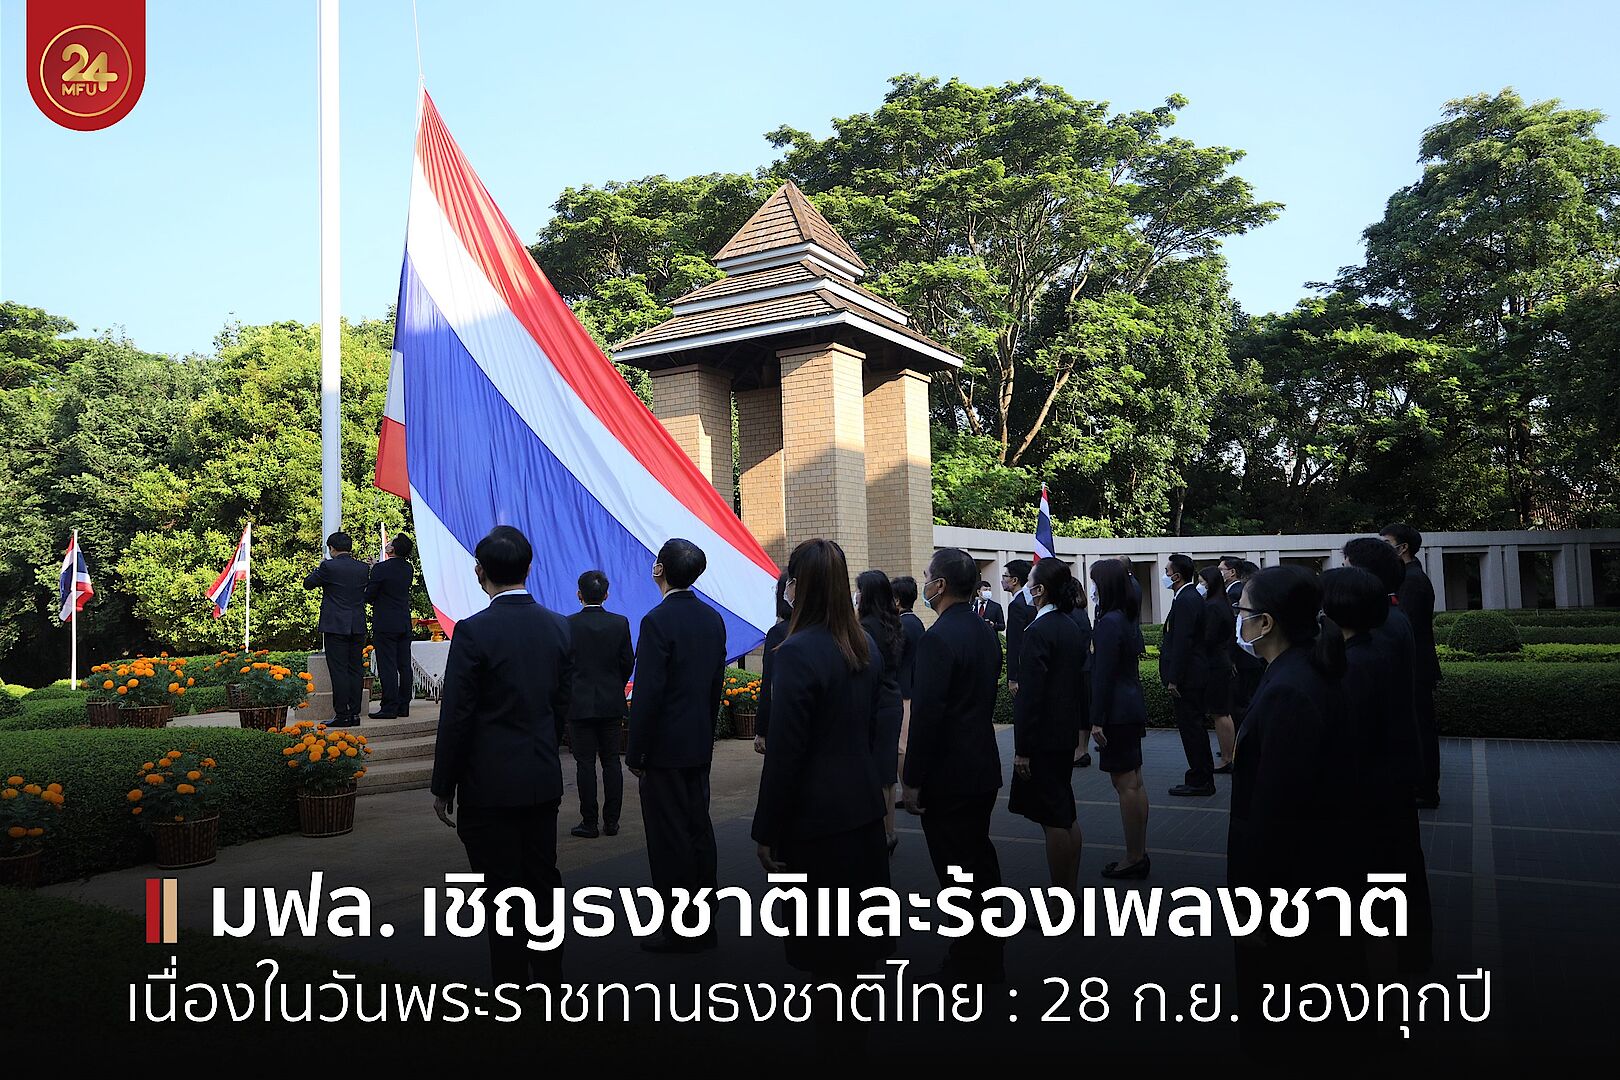 มฟล. จัดกิจกรรมเชิญธงชาติและร้องเพลงชาติเนื่องในวันพระราชทานธงชาติไทย